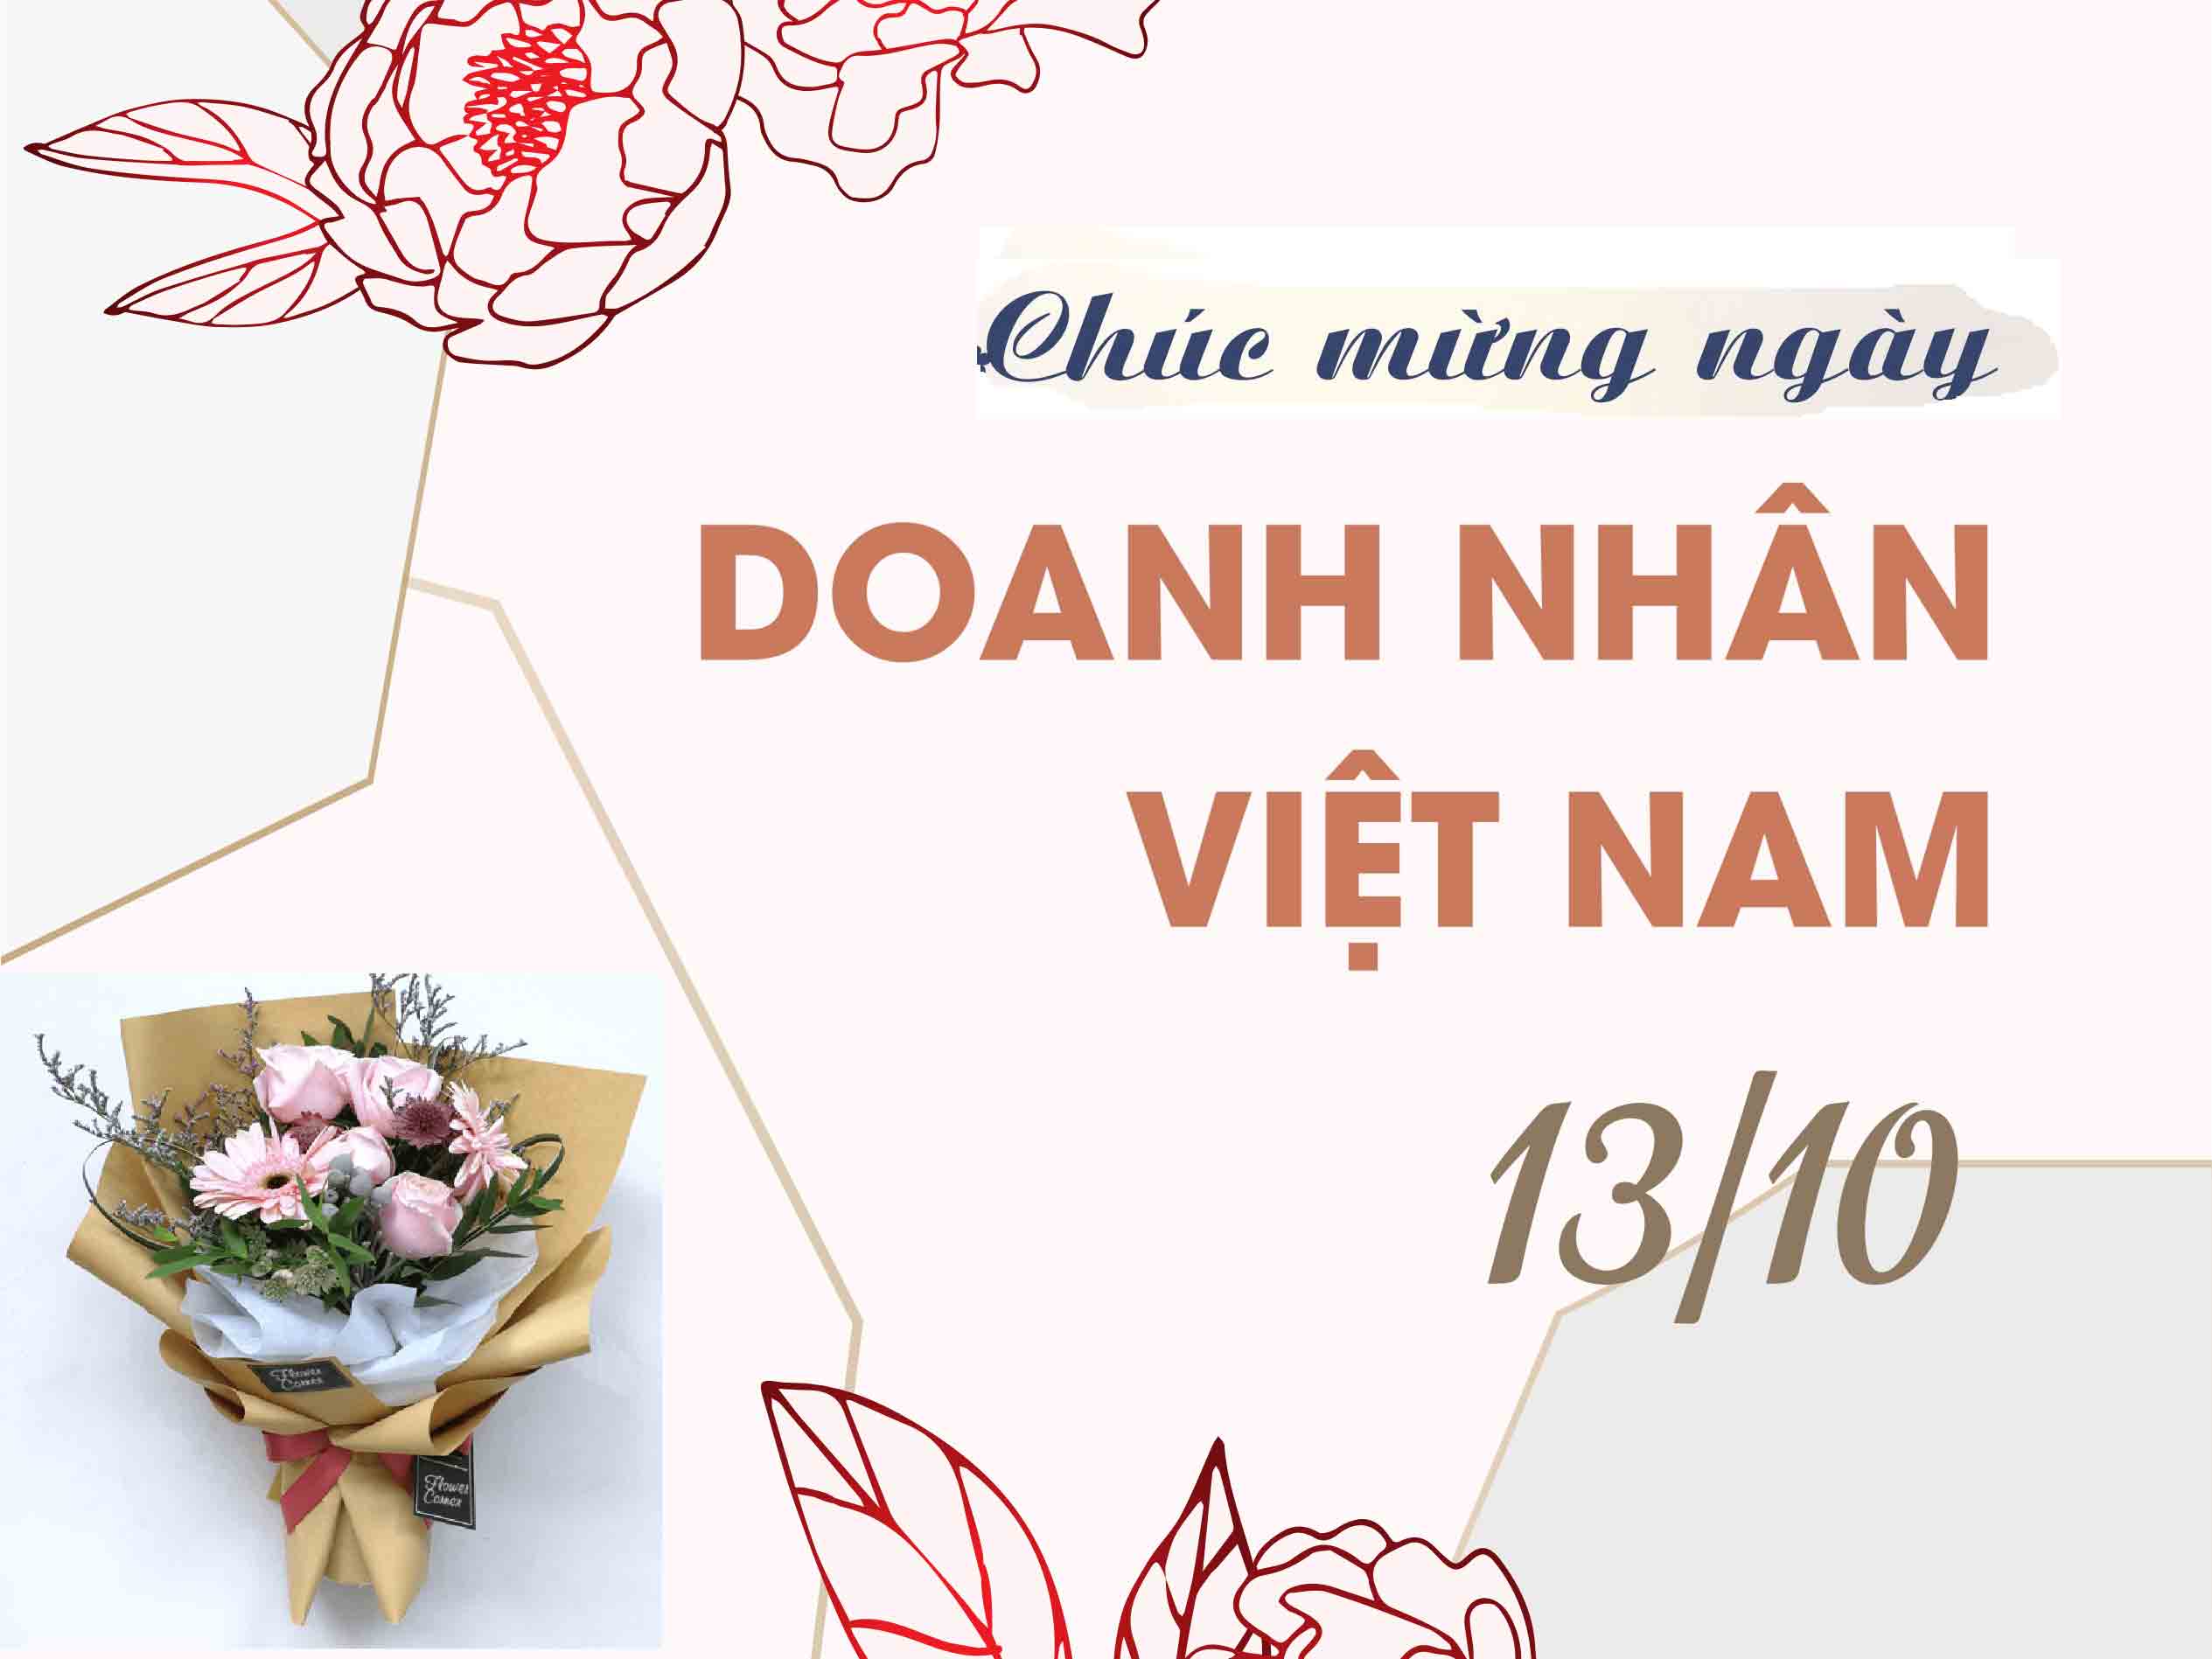 Thiệp chúc mừng ngày Doanh nhân Việt Nam 13/10 có nên in ấn thêm hình ảnh doanh nhân hay không?
